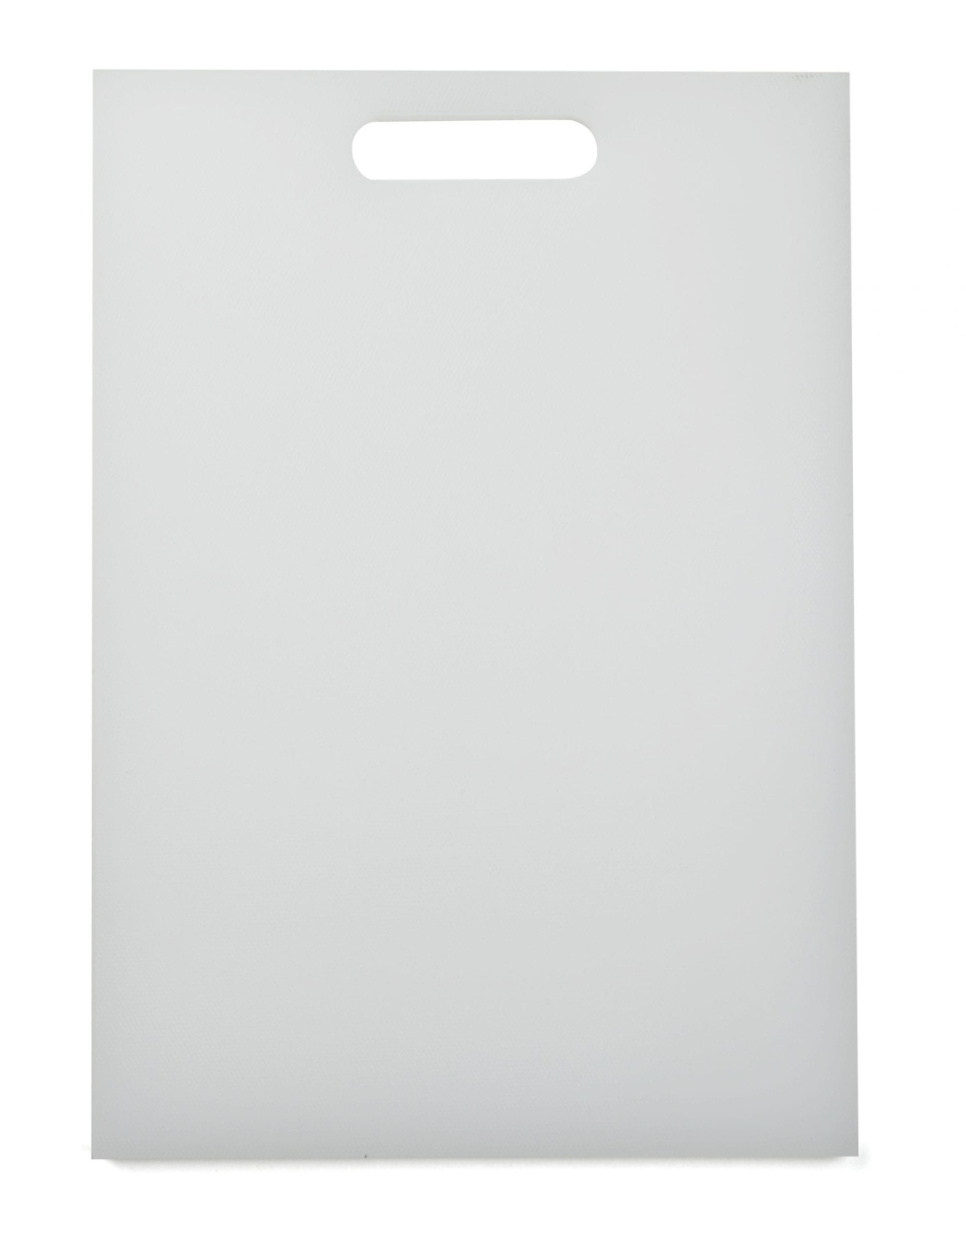 Skjærebrett hvit, 35 x 26 cm - Exxent i gruppen Matlaging / Kjøkkenutstyr / Skjærebrett hos The Kitchen Lab (1071-10194)